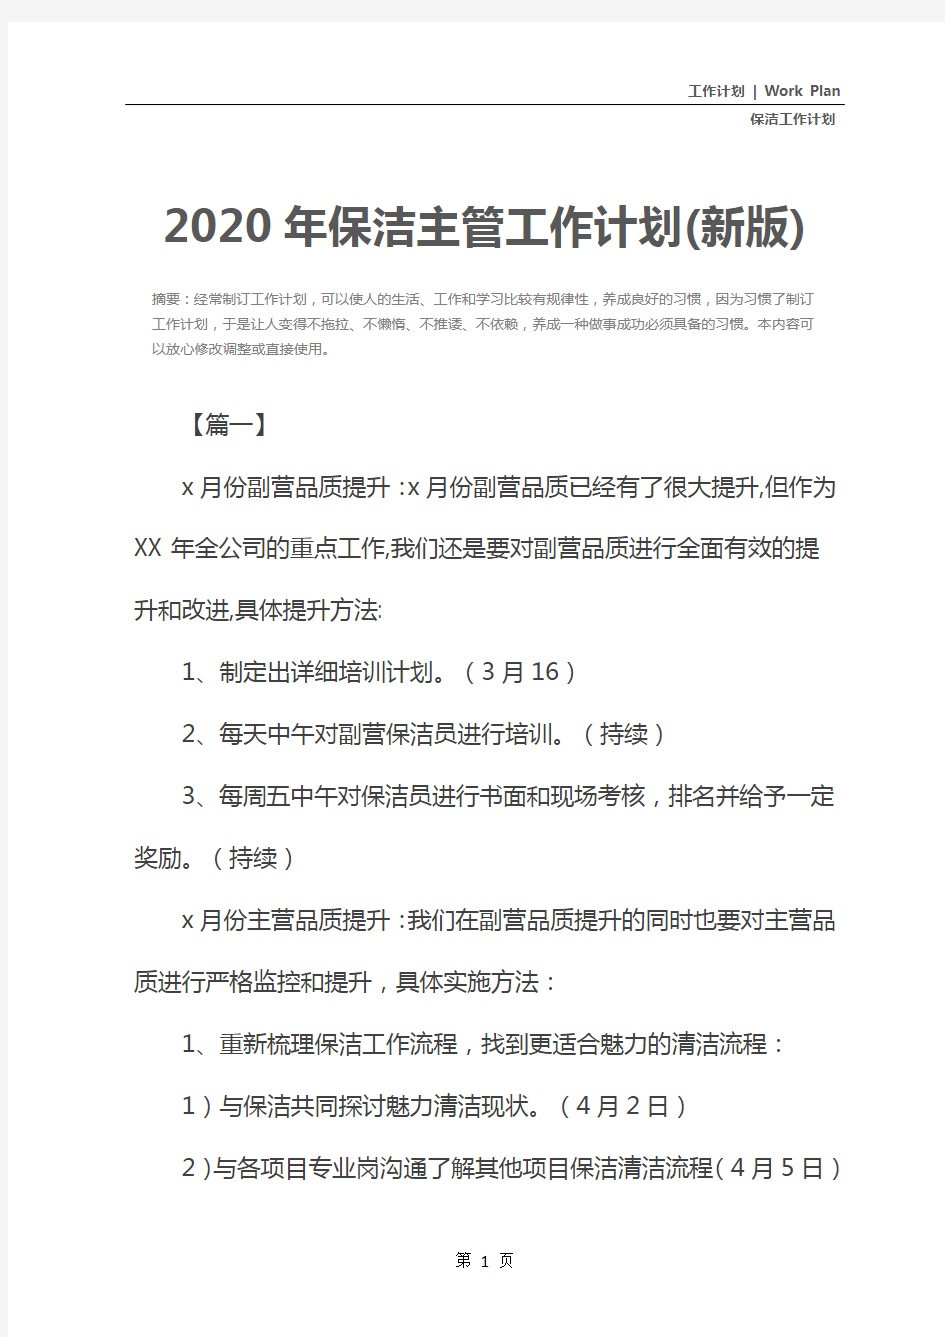 2020年保洁主管工作计划(新版)